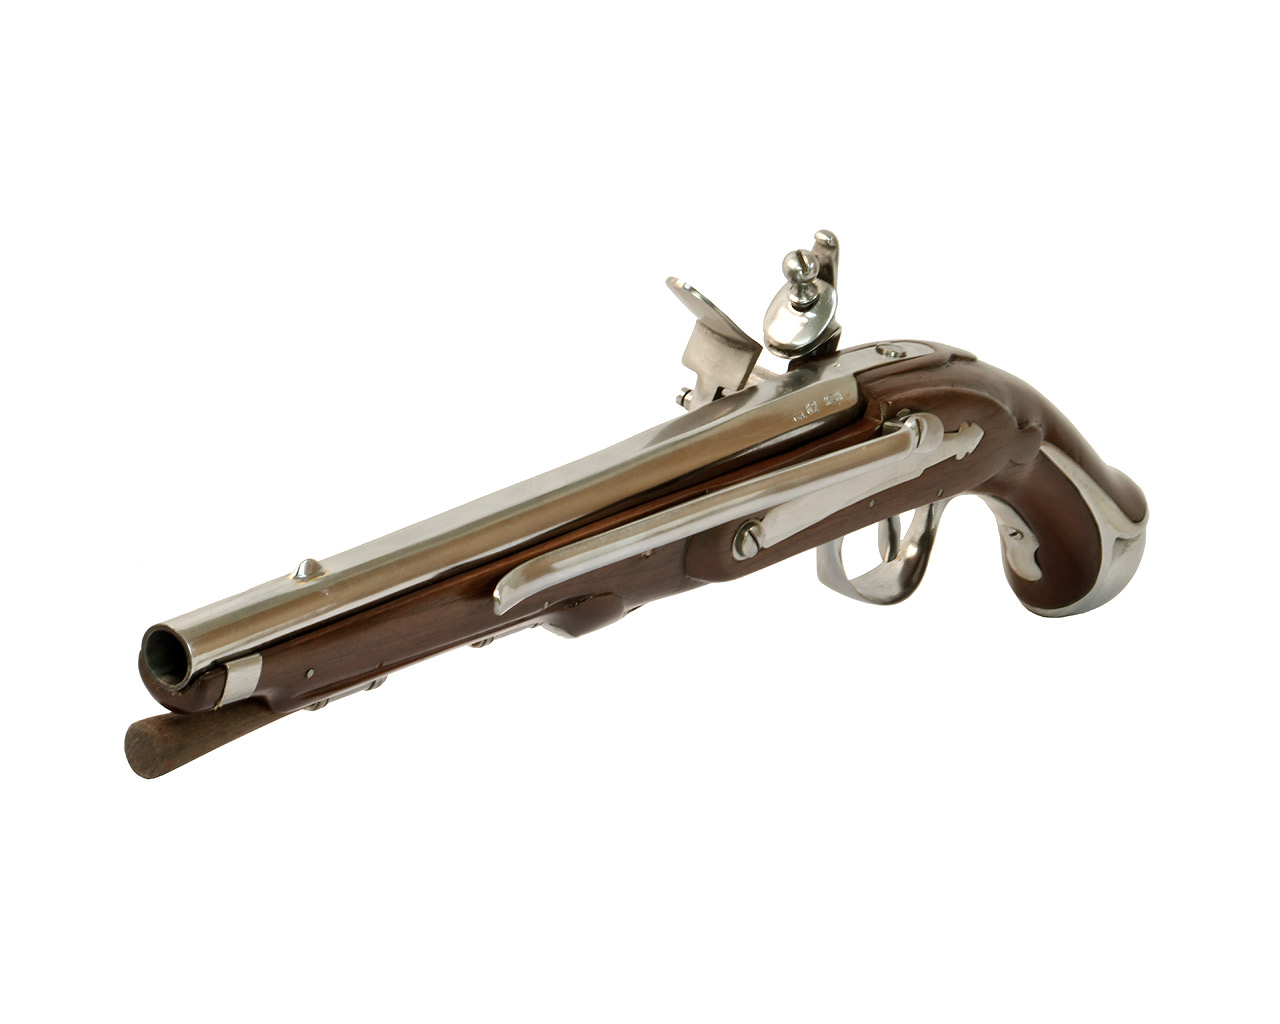 Vorderlader Steinschlosspistole French 1733 Flintlock Pistol, stahl, Kaliber .62 bzw. 15,8 mm (P18)